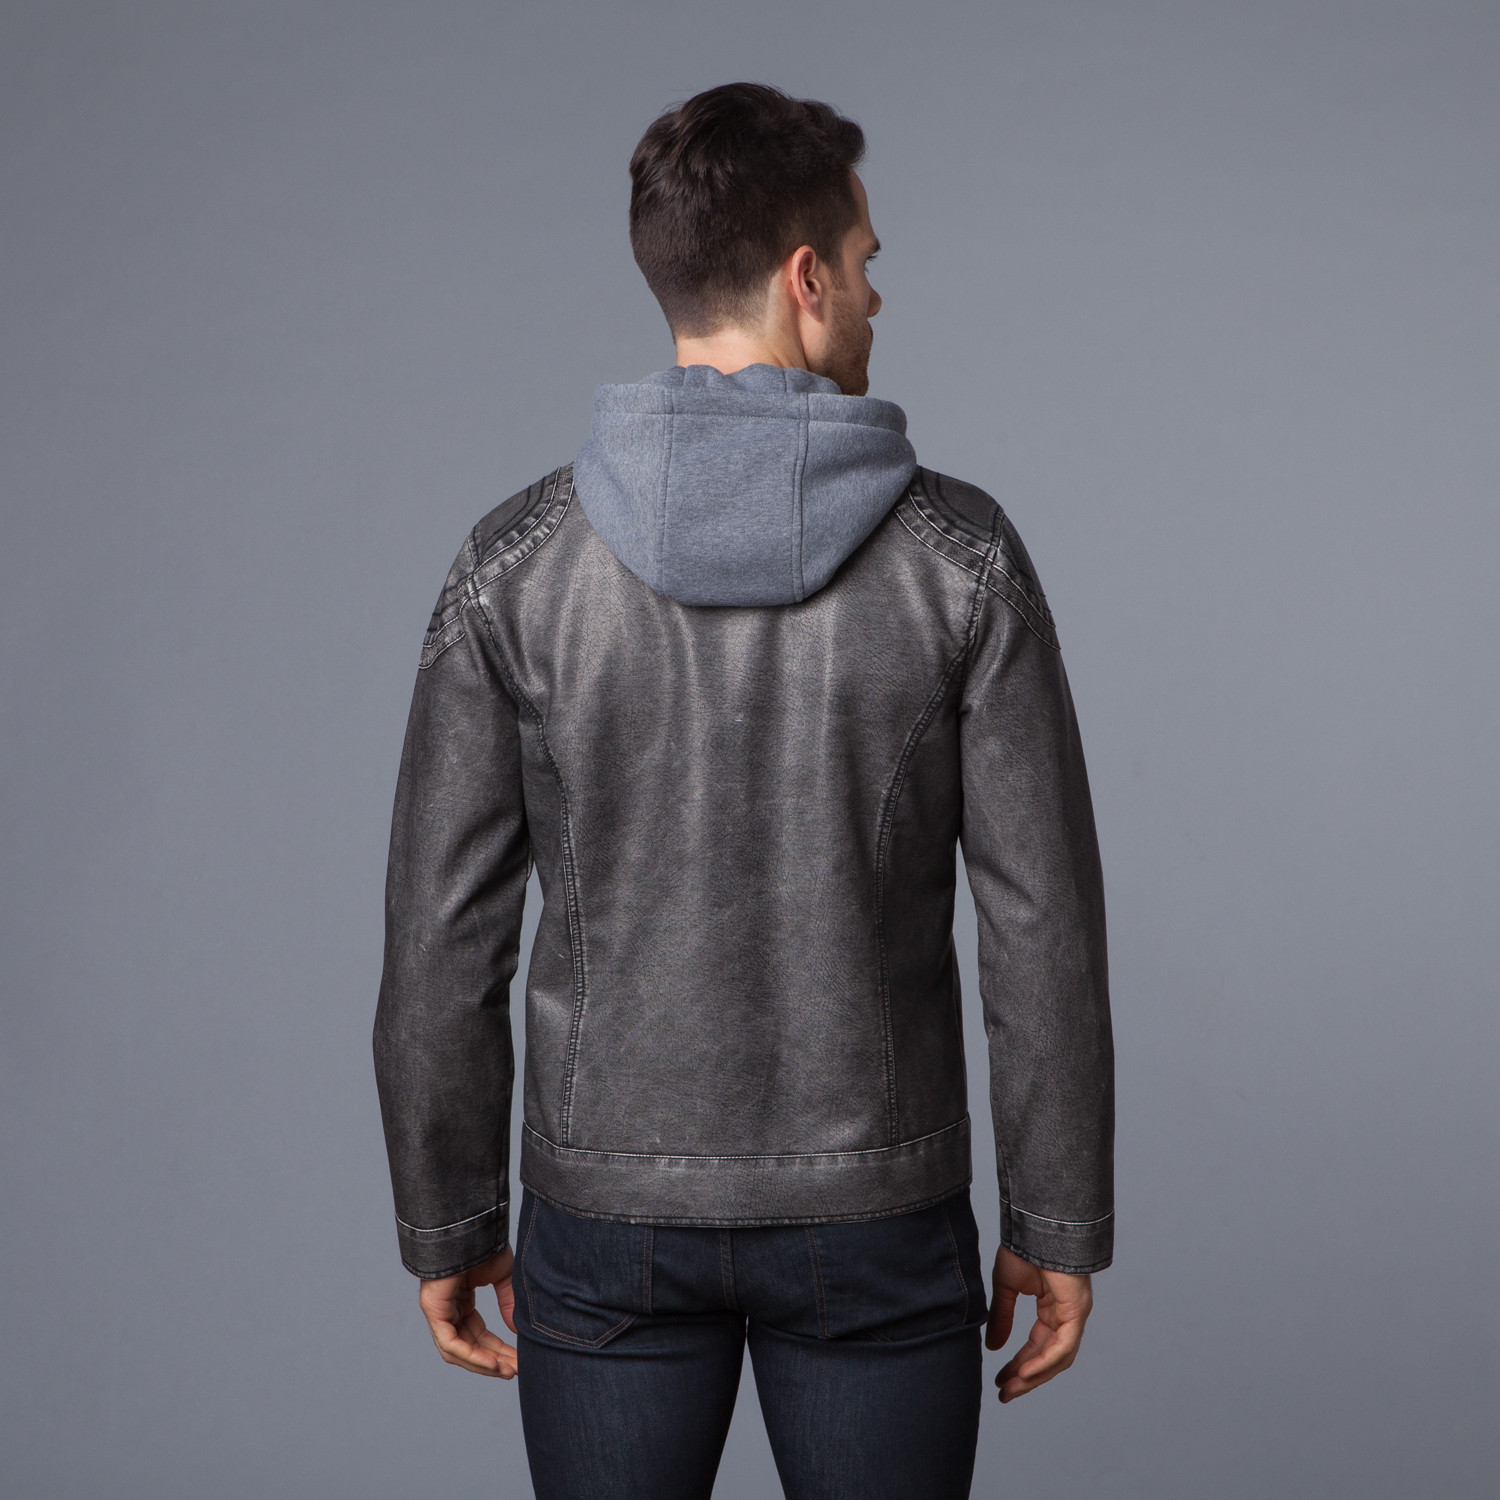 Two-Tone Leather Jacket + Fleece Hood // Charcoal (S) - Urban Republic ...